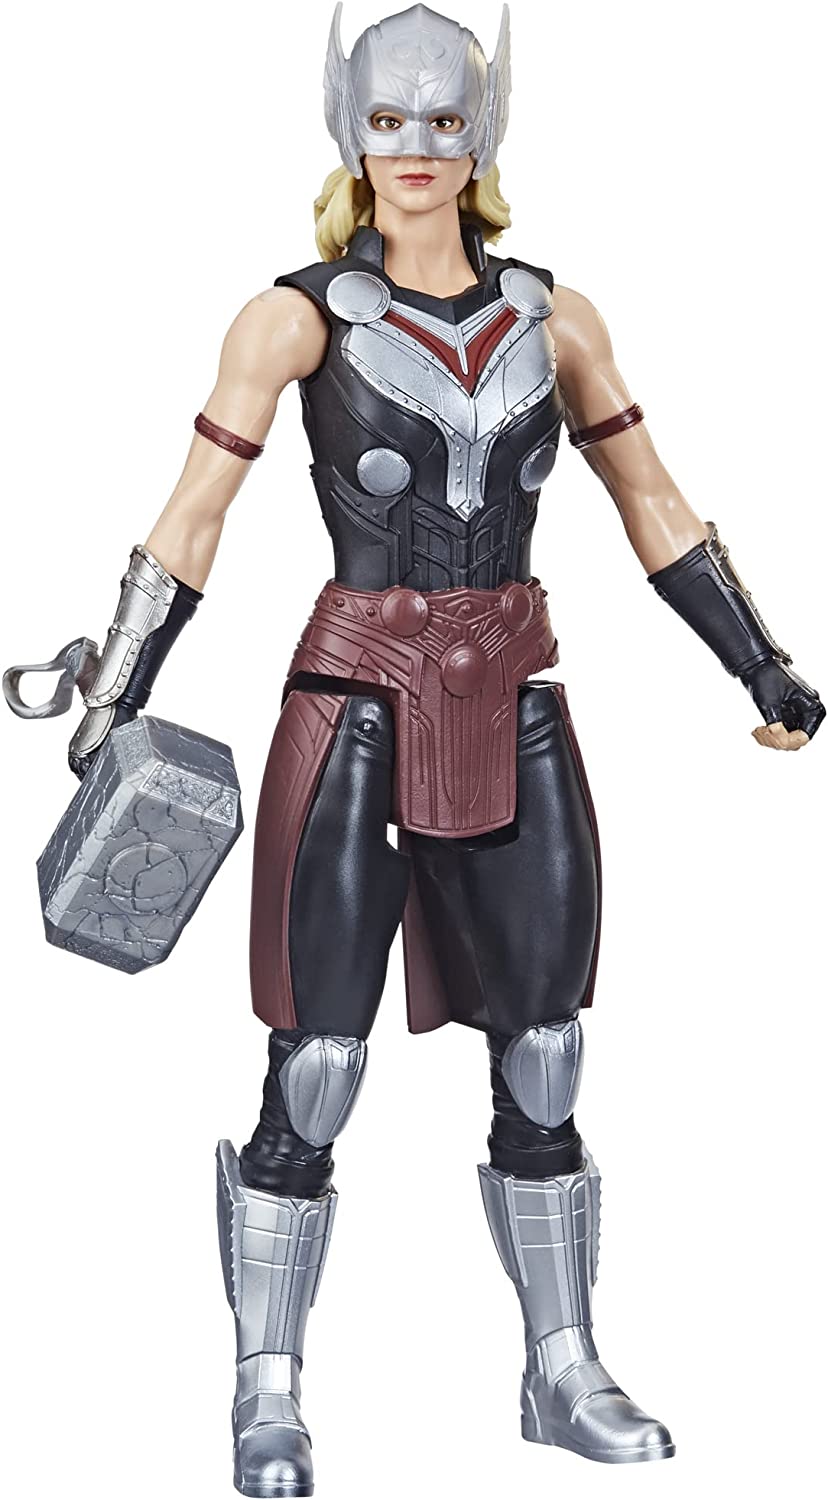 Thor Titan Hero Mighty Thor